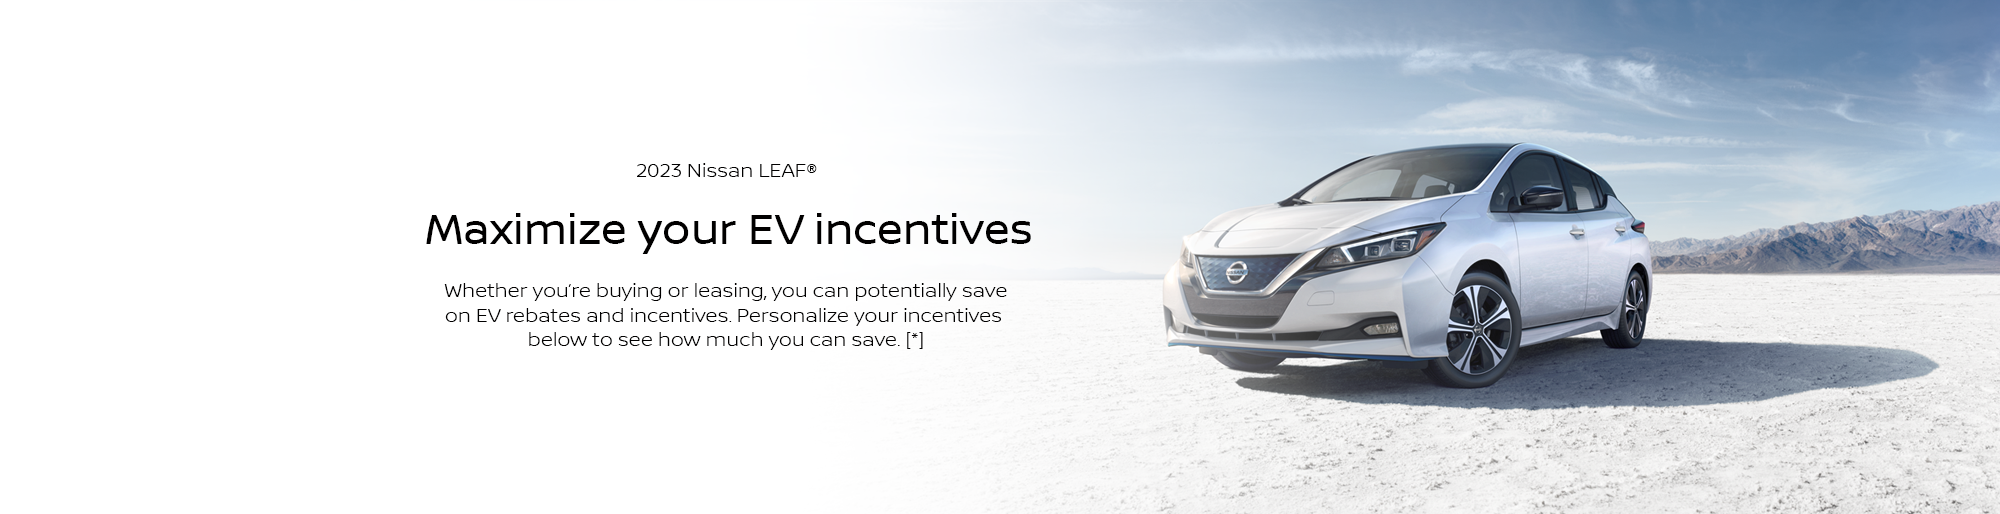 Nissan LEAF EV Rebates Incentives